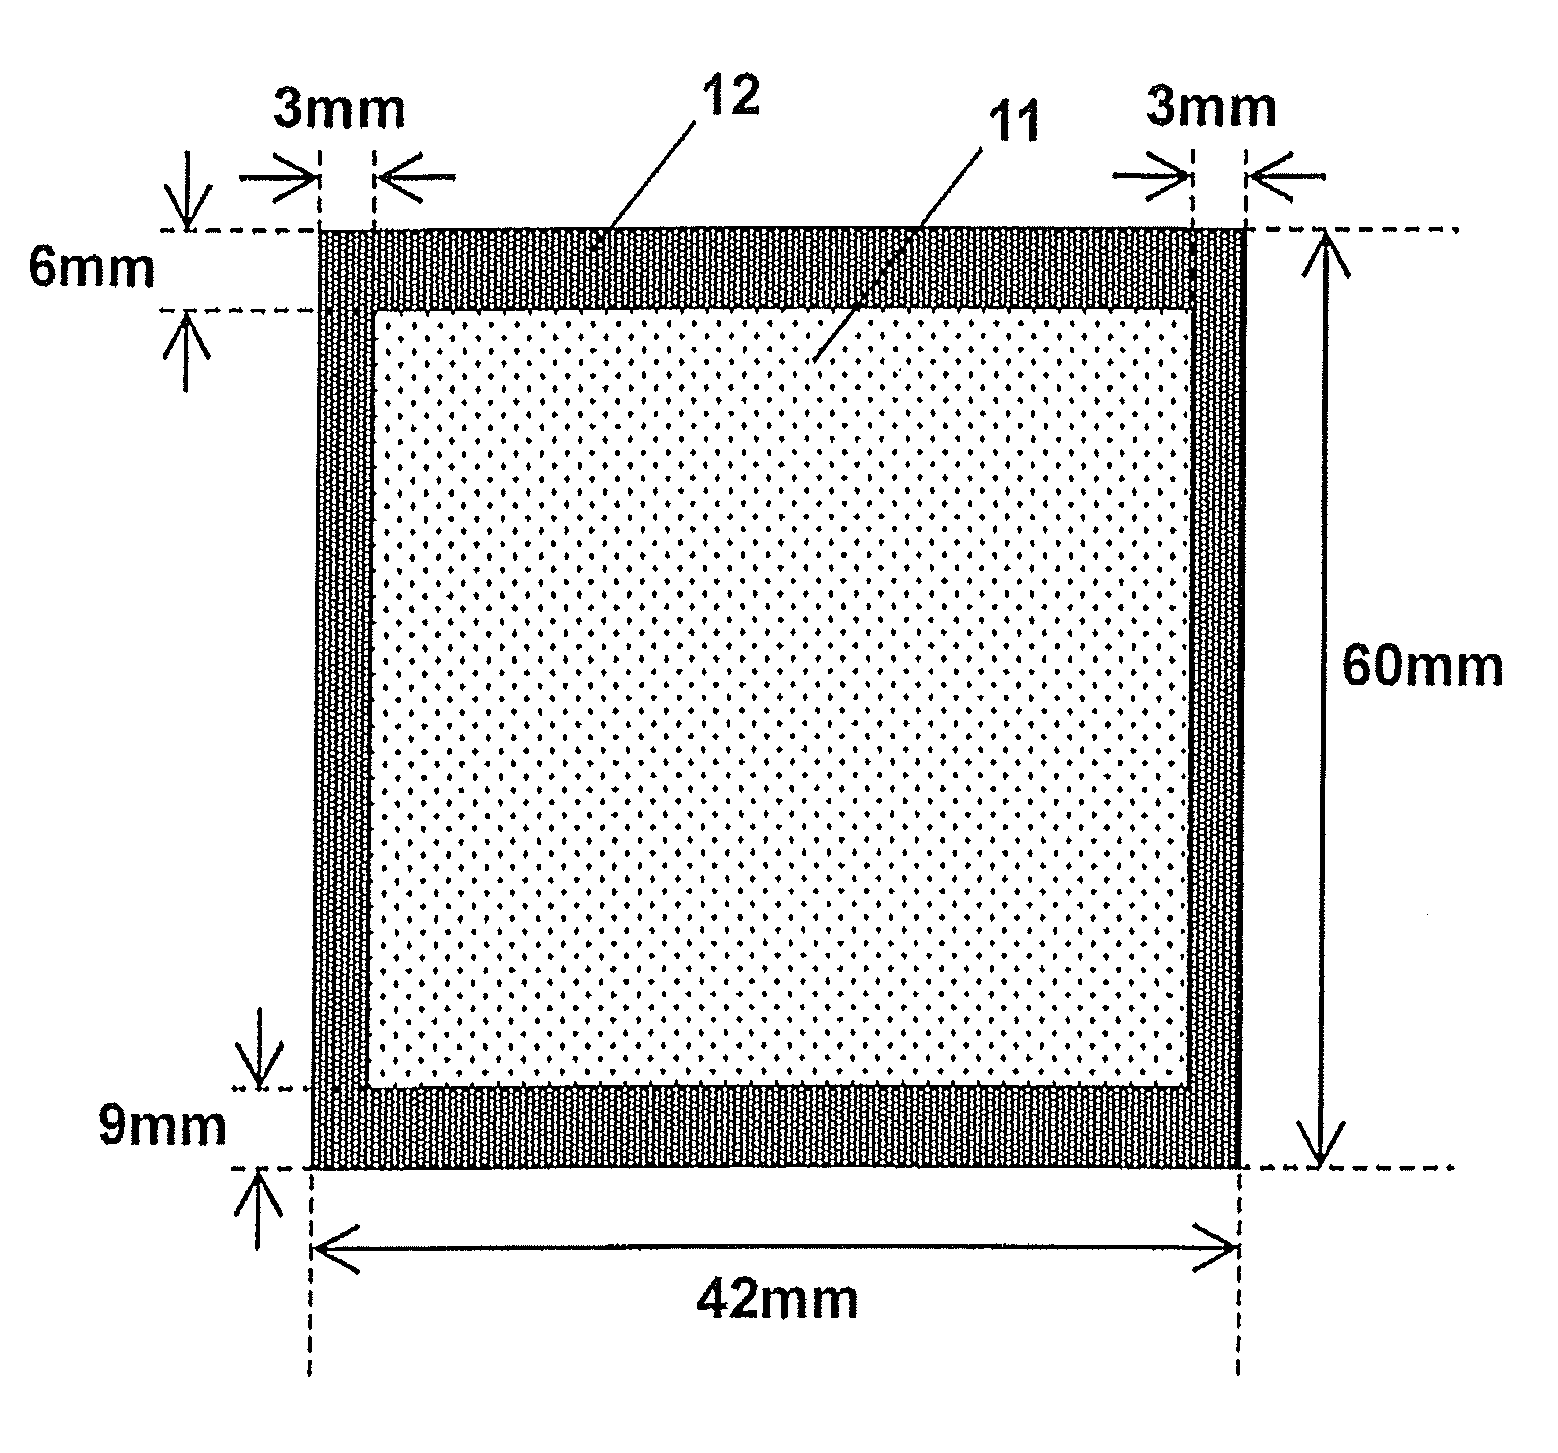 Optical pressure-sensitive adhesive sheet